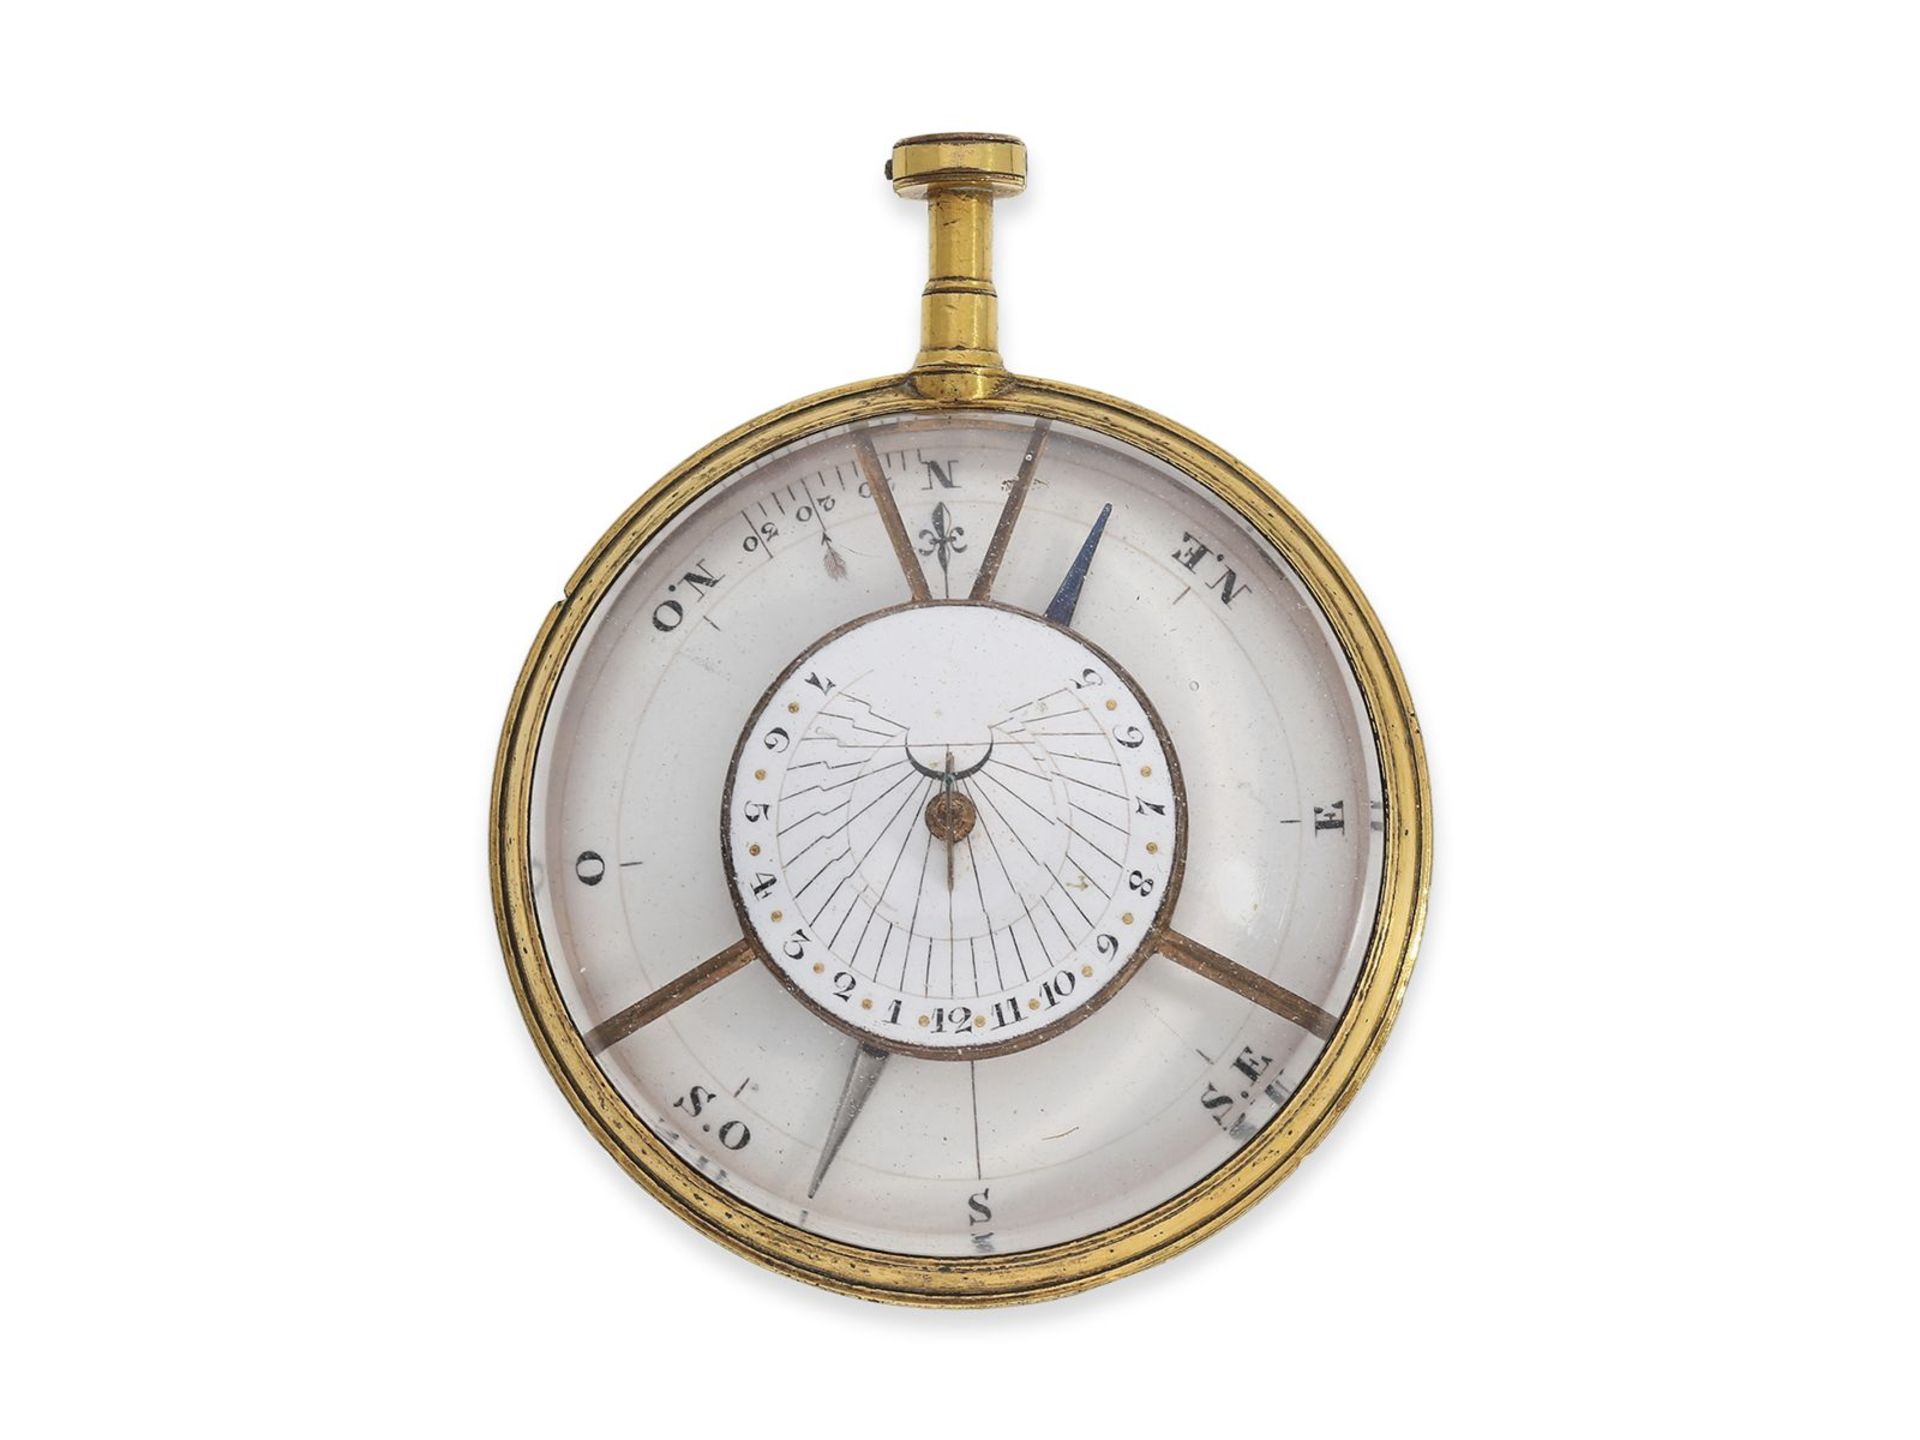 Taschenuhr: sehr seltene Taschen-Sonnenuhr mit Kompass, sog. "Sun-Dial", vermutlich um 1780, Ca.